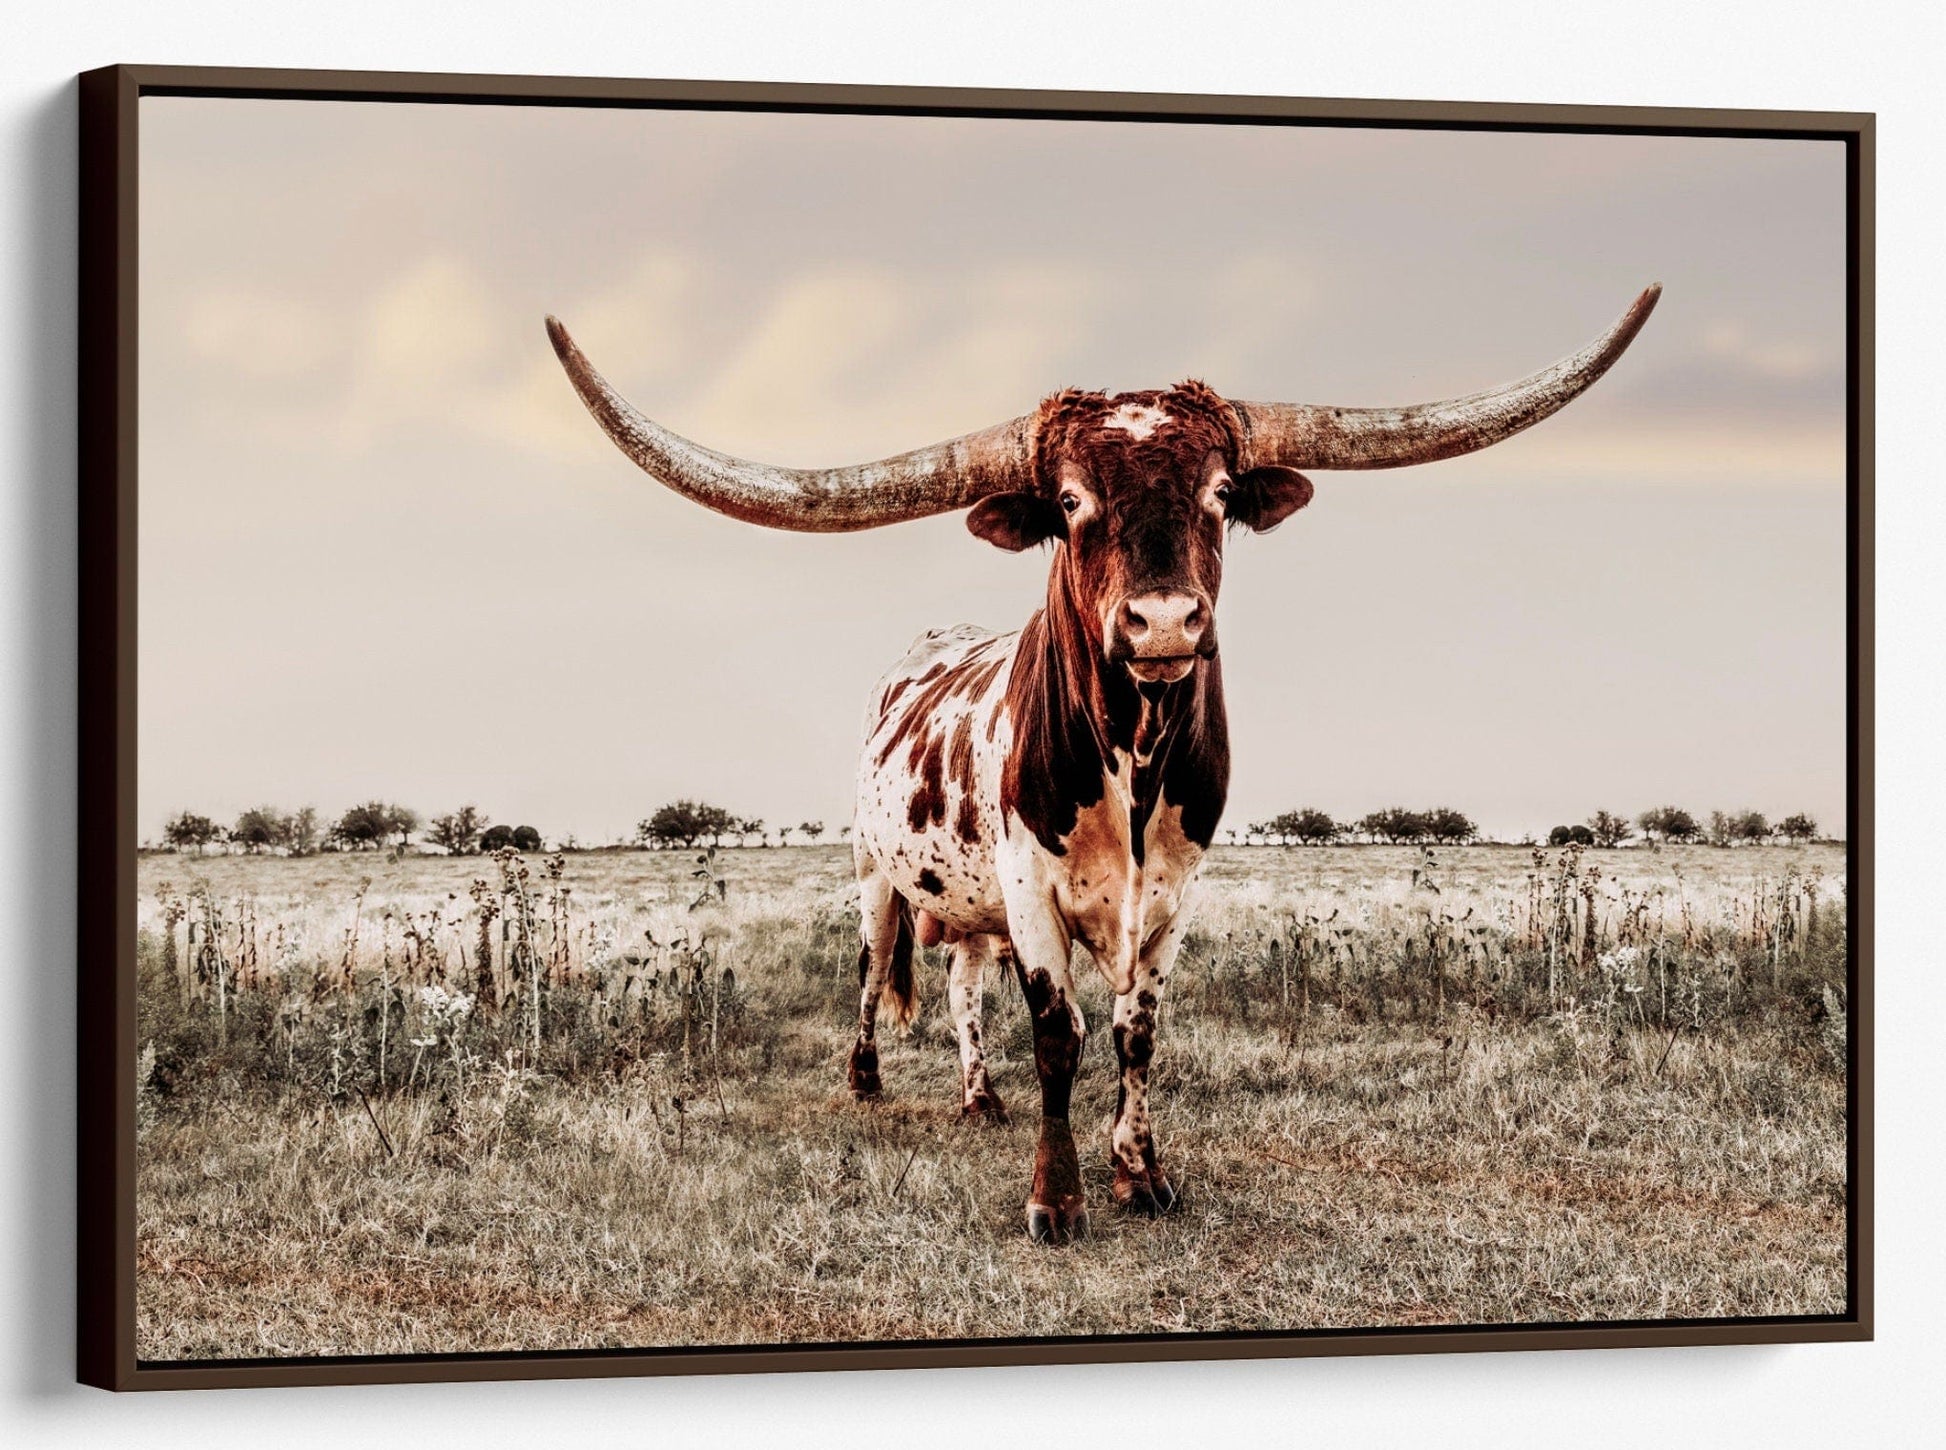 Texas Longhorn Bull Canvas Print - Texas Style Wall Decor Canvas-Walnut Frame / 12 x 18 Inches Wall Art Teri James Photography